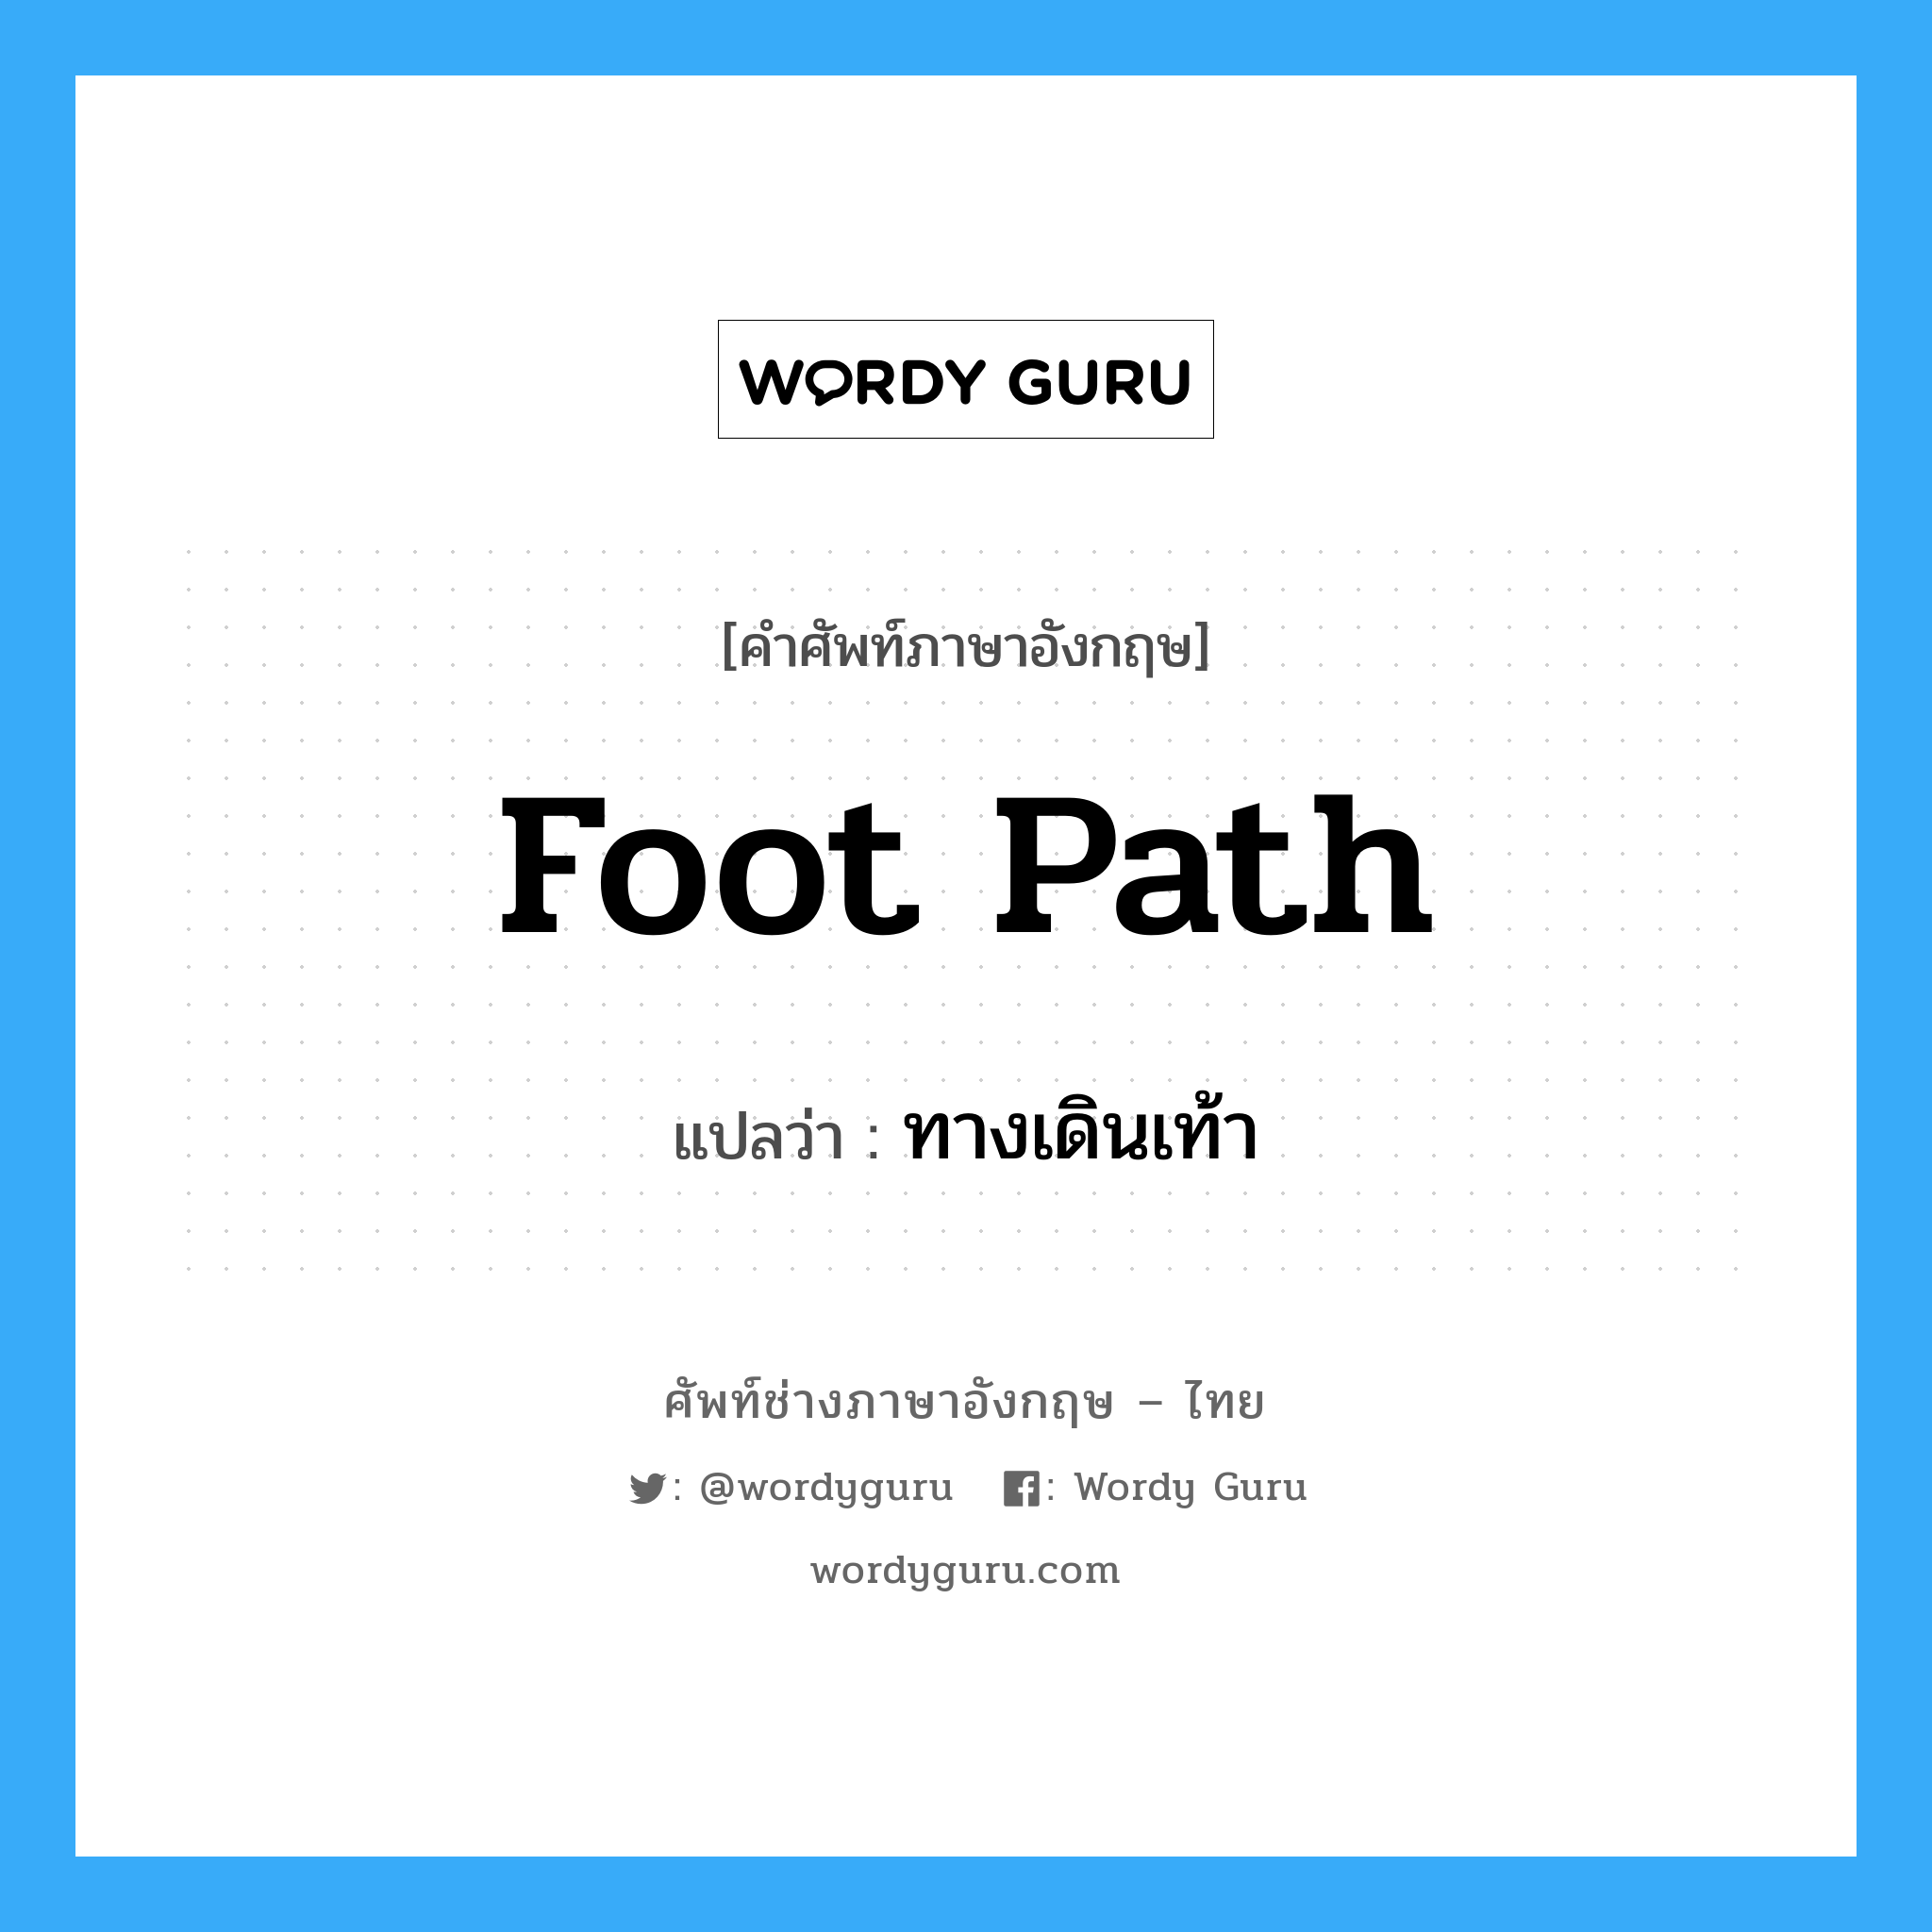 foot path แปลว่า?, คำศัพท์ช่างภาษาอังกฤษ - ไทย foot path คำศัพท์ภาษาอังกฤษ foot path แปลว่า ทางเดินเท้า